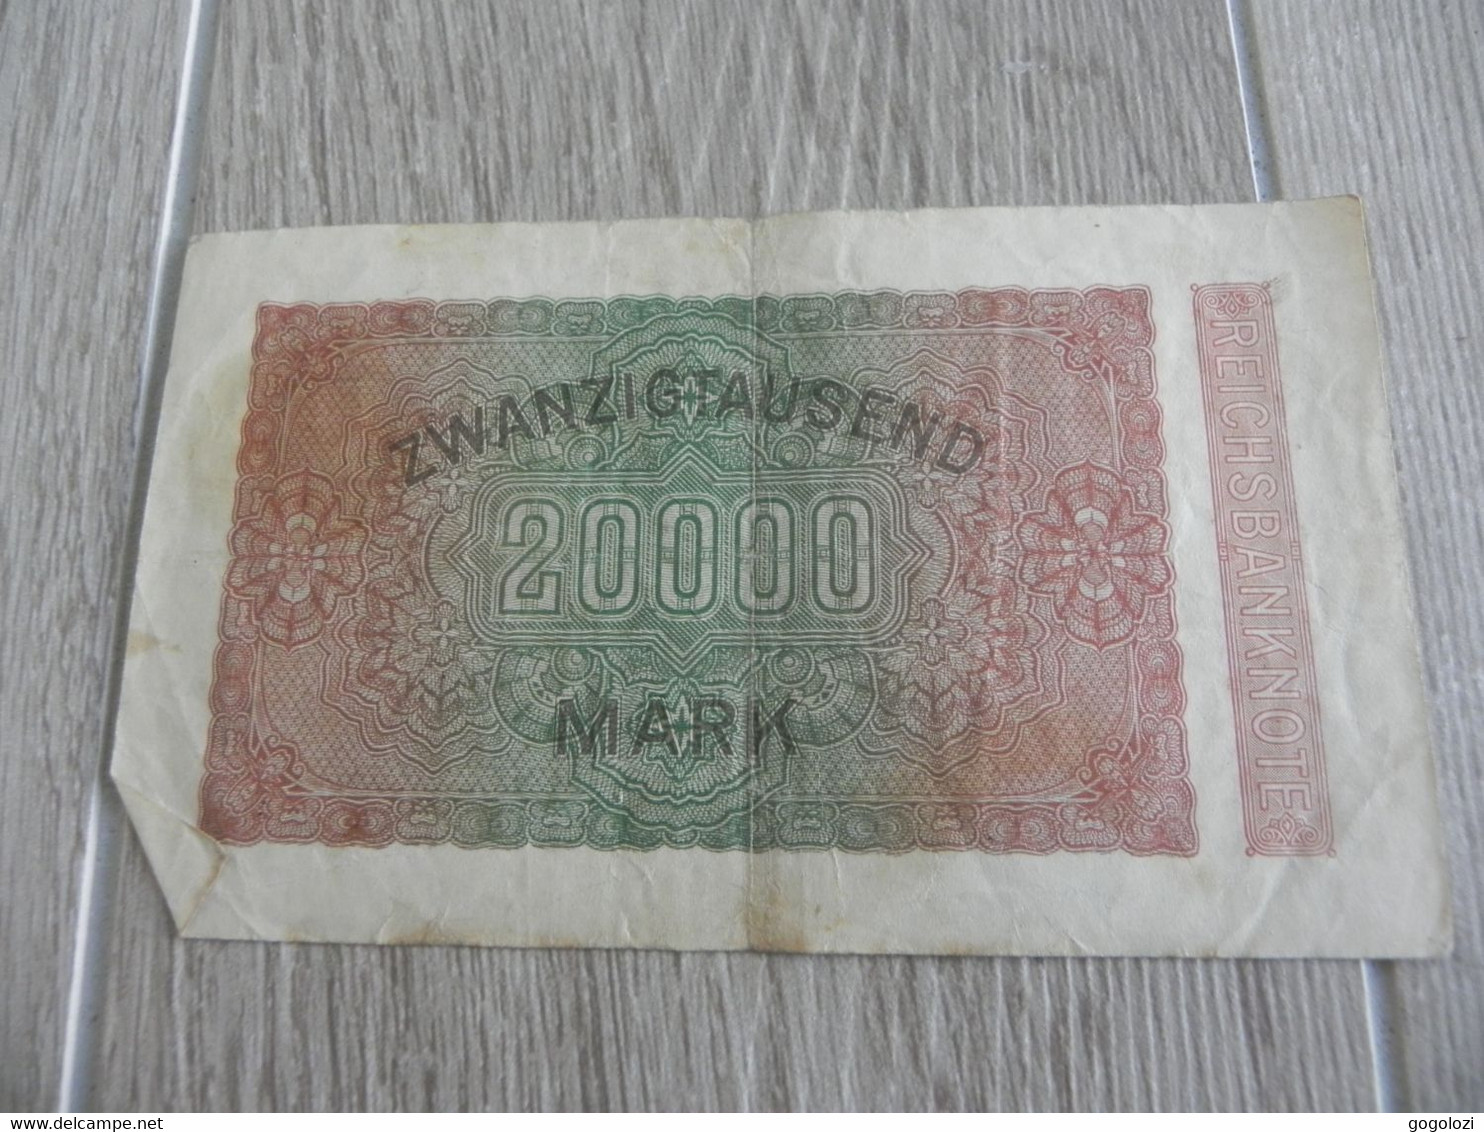 Deutschland 20'000 Mark 1923 - 20000 Mark